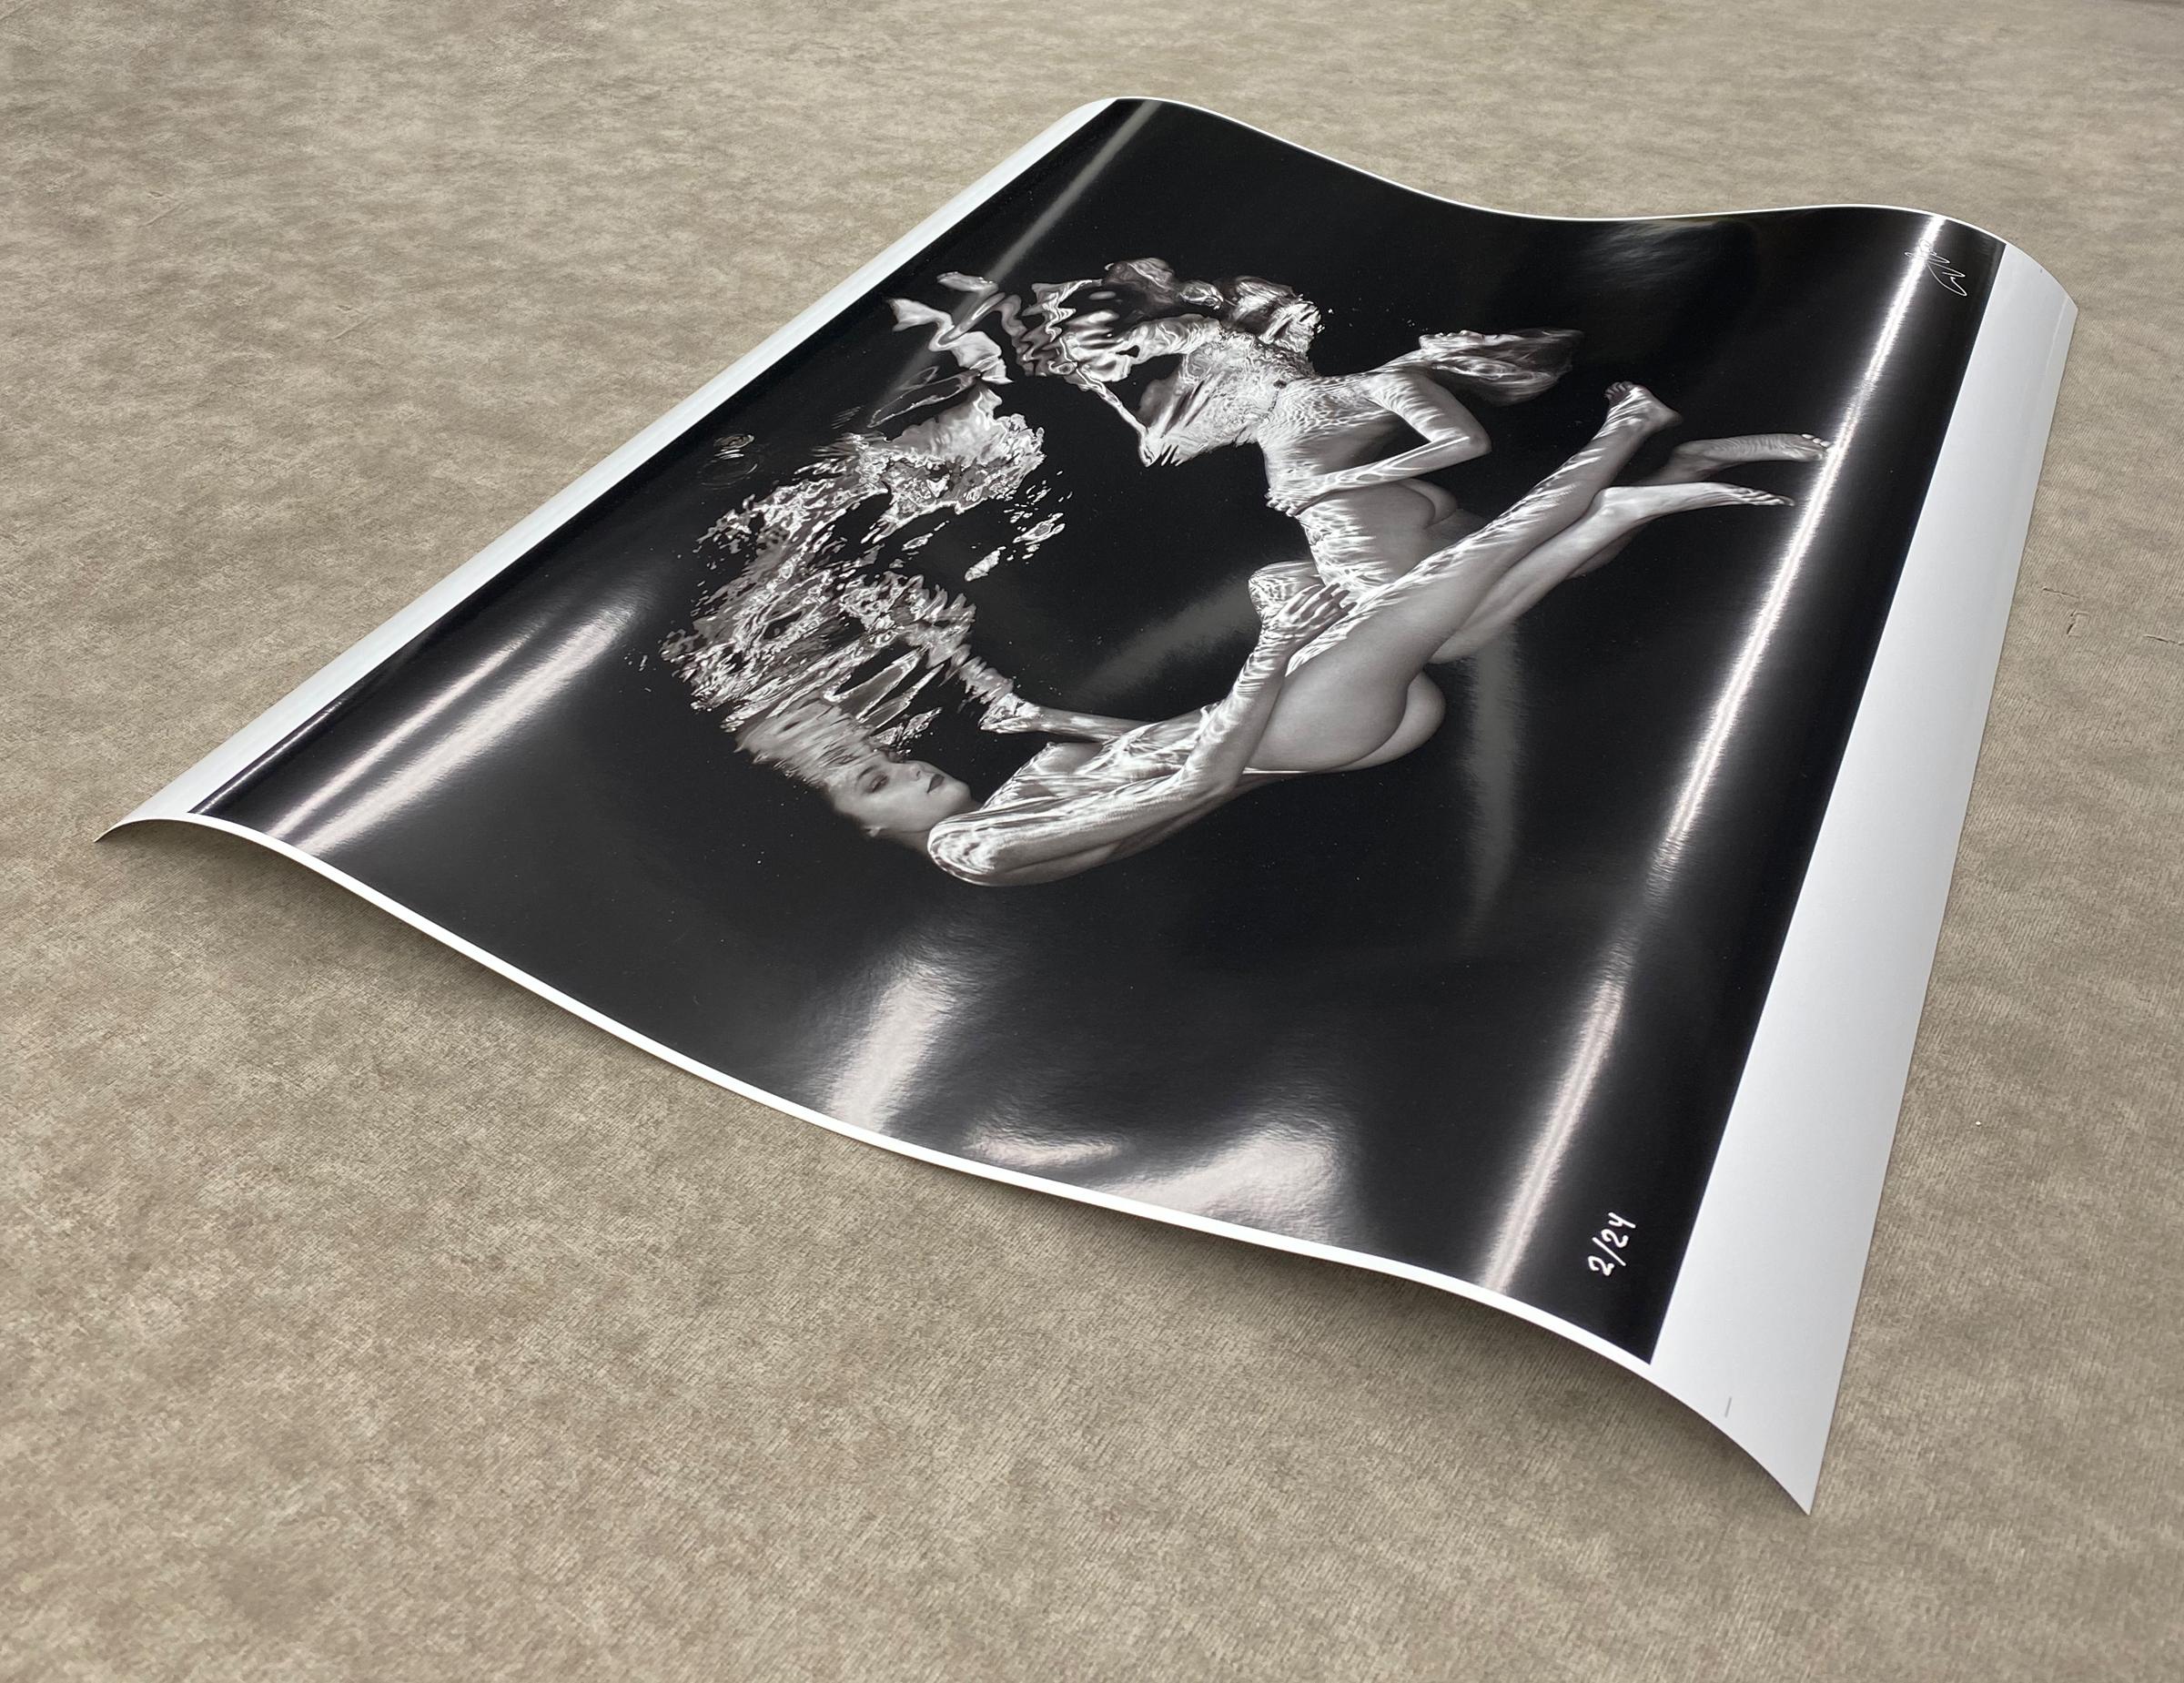 Double Trouble - photographie sous-marine de nu en noir et blanc - tirage papier 17 x 24